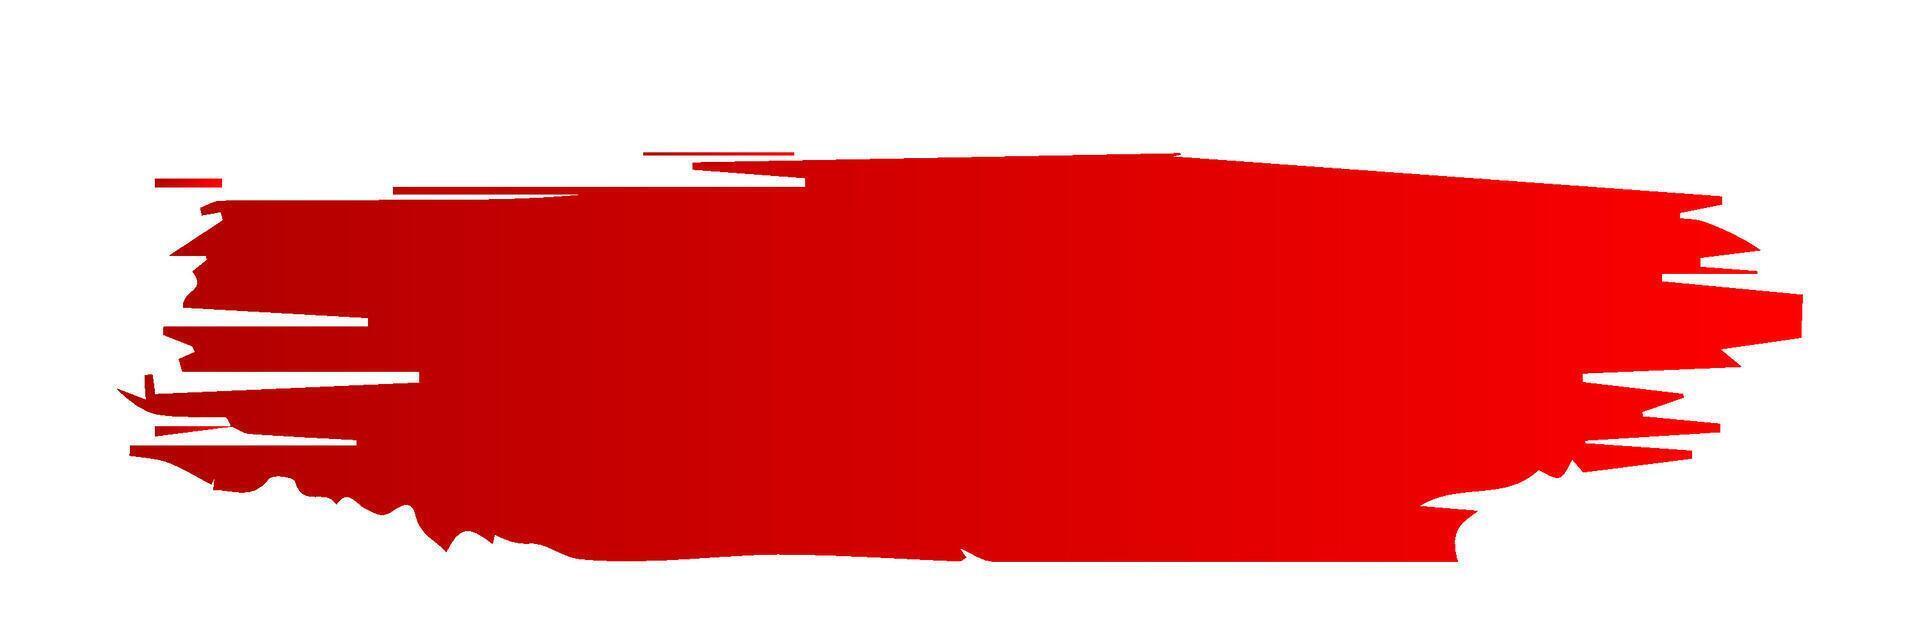 röd borsta stroke, bläck stänka ner och konstnärlig design element. smutsig vattenfärg textur, låda, ram, grunge bakgrund, stänk eller kreativ form för social media. abstrakt teckning. vektor